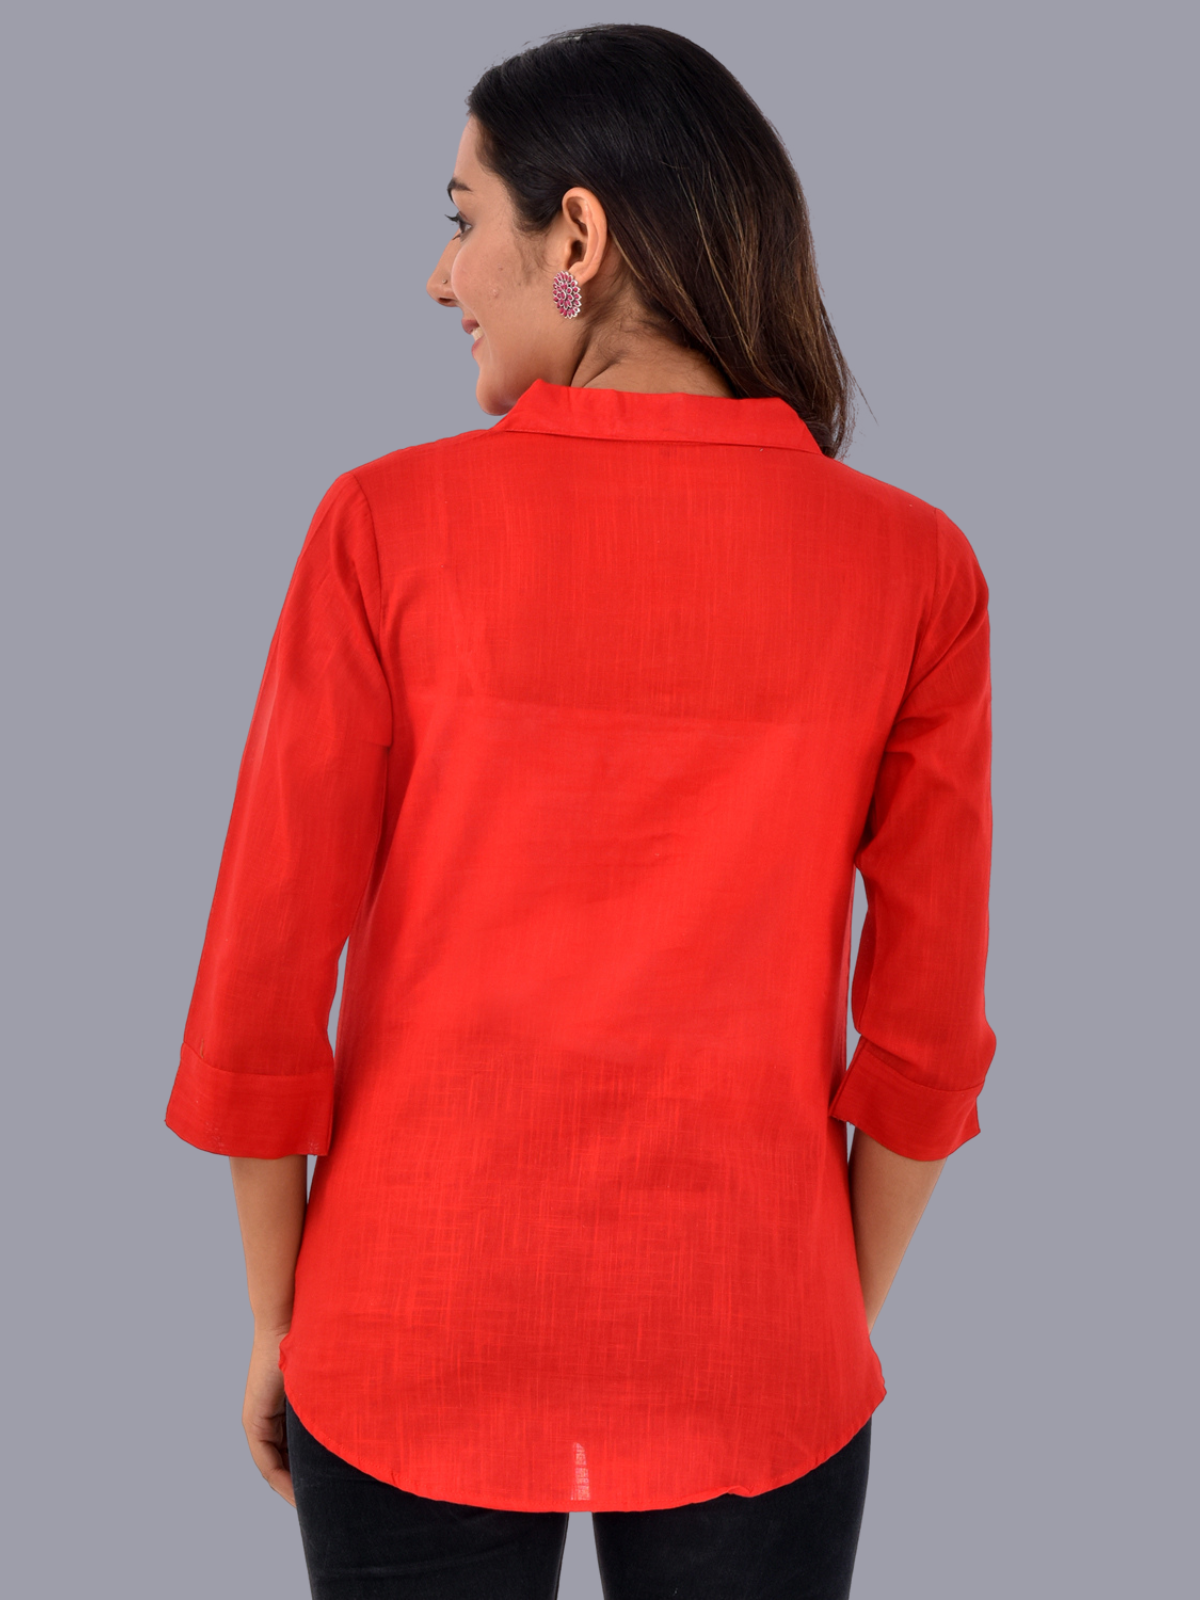 Womens Red 3/4 Sleeve Regular Fit Cotton Shirt